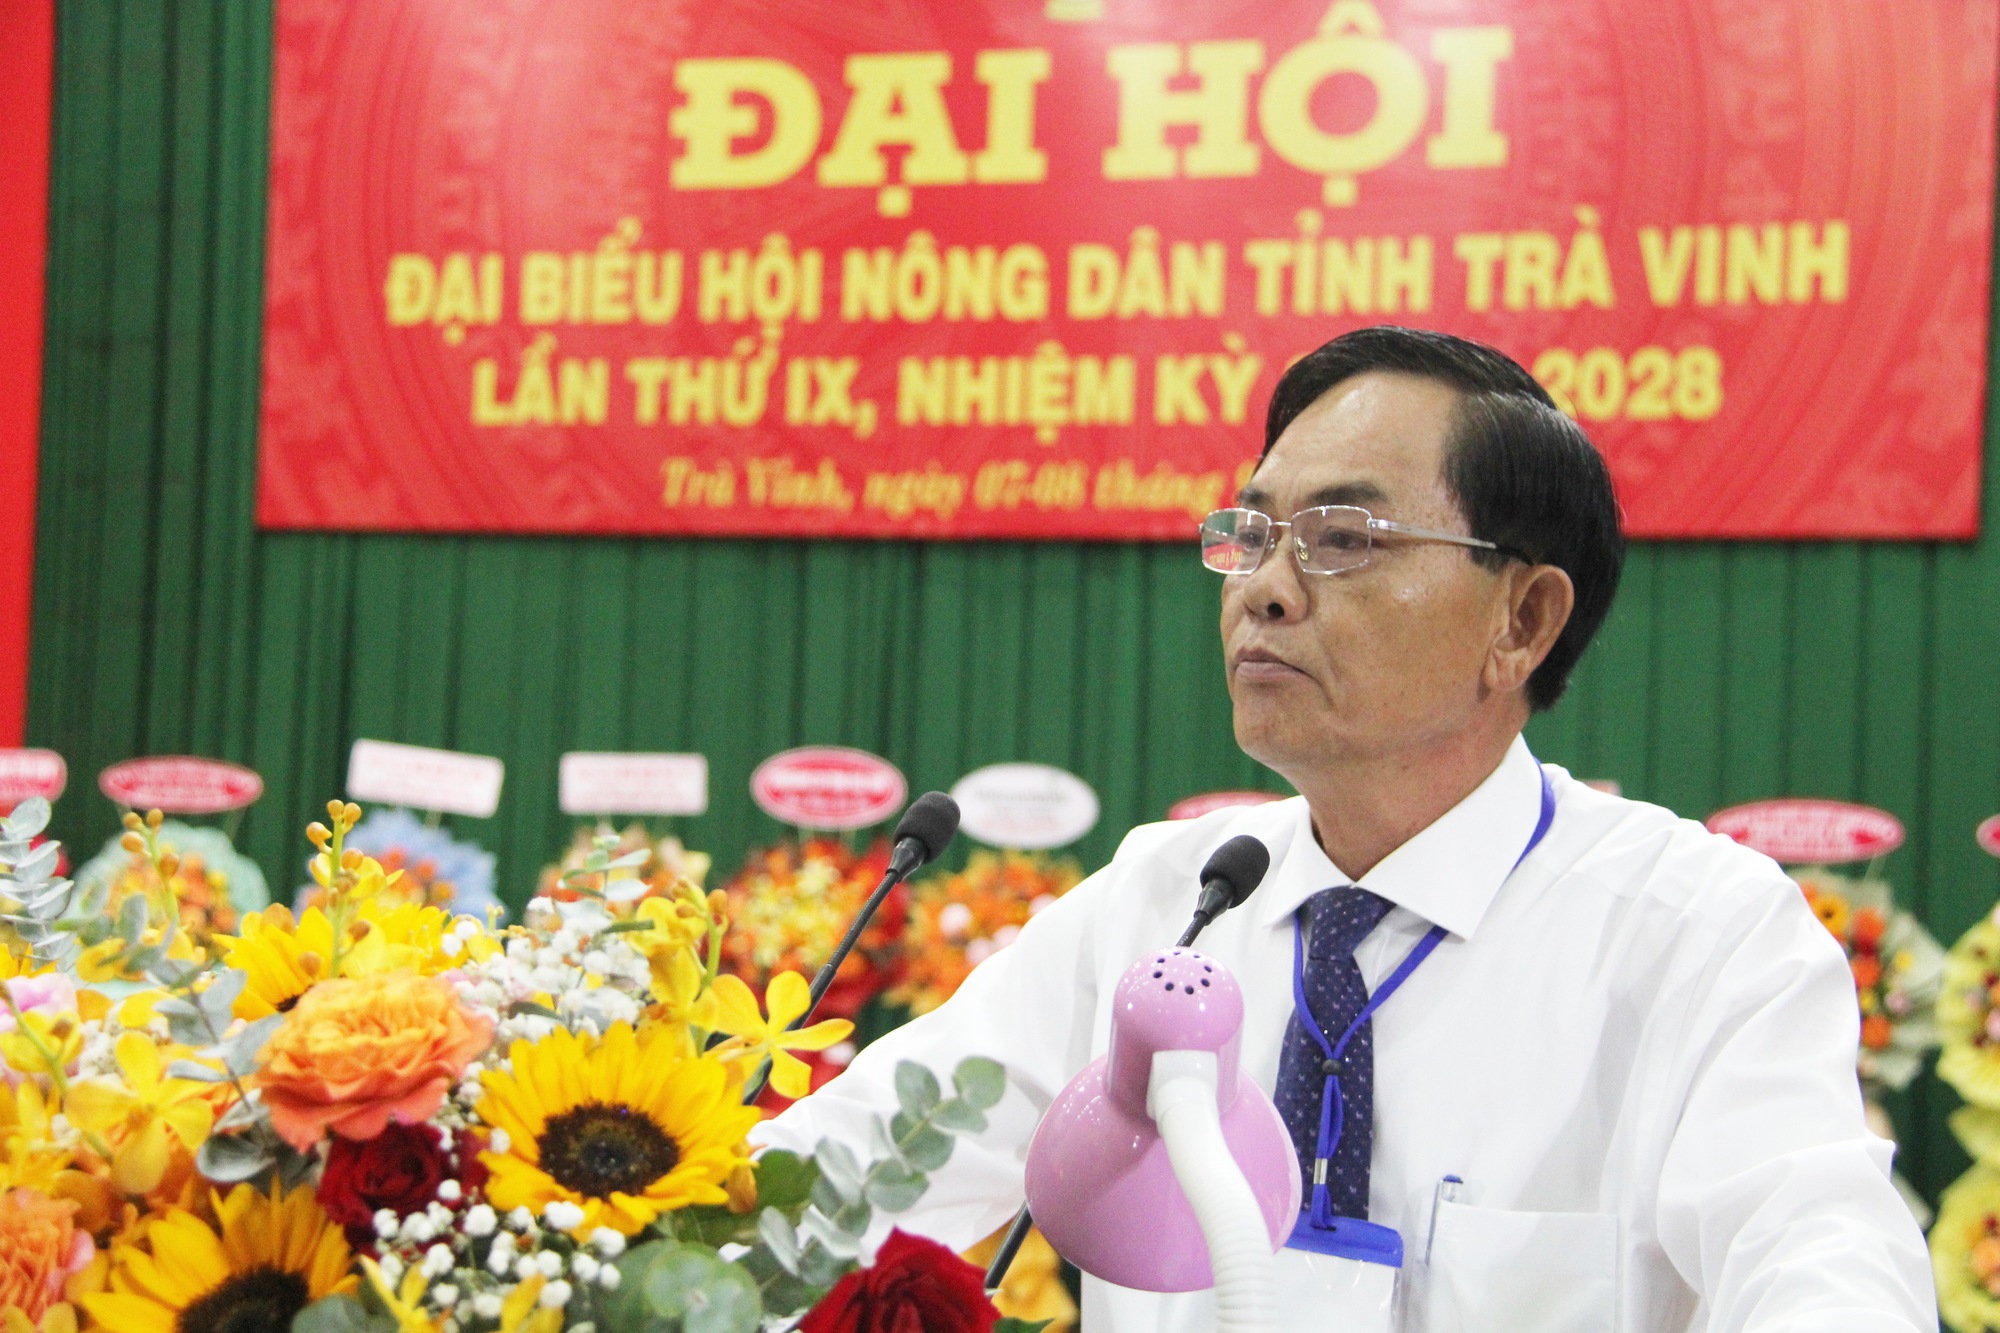 Bí thư Tỉnh ủy Trà Vinh, Phó Chủ tịch TƯ Hội NDVN dự, chỉ đạo Đại hội Hội Nông dân tỉnh Trà Vinh - Ảnh 3.